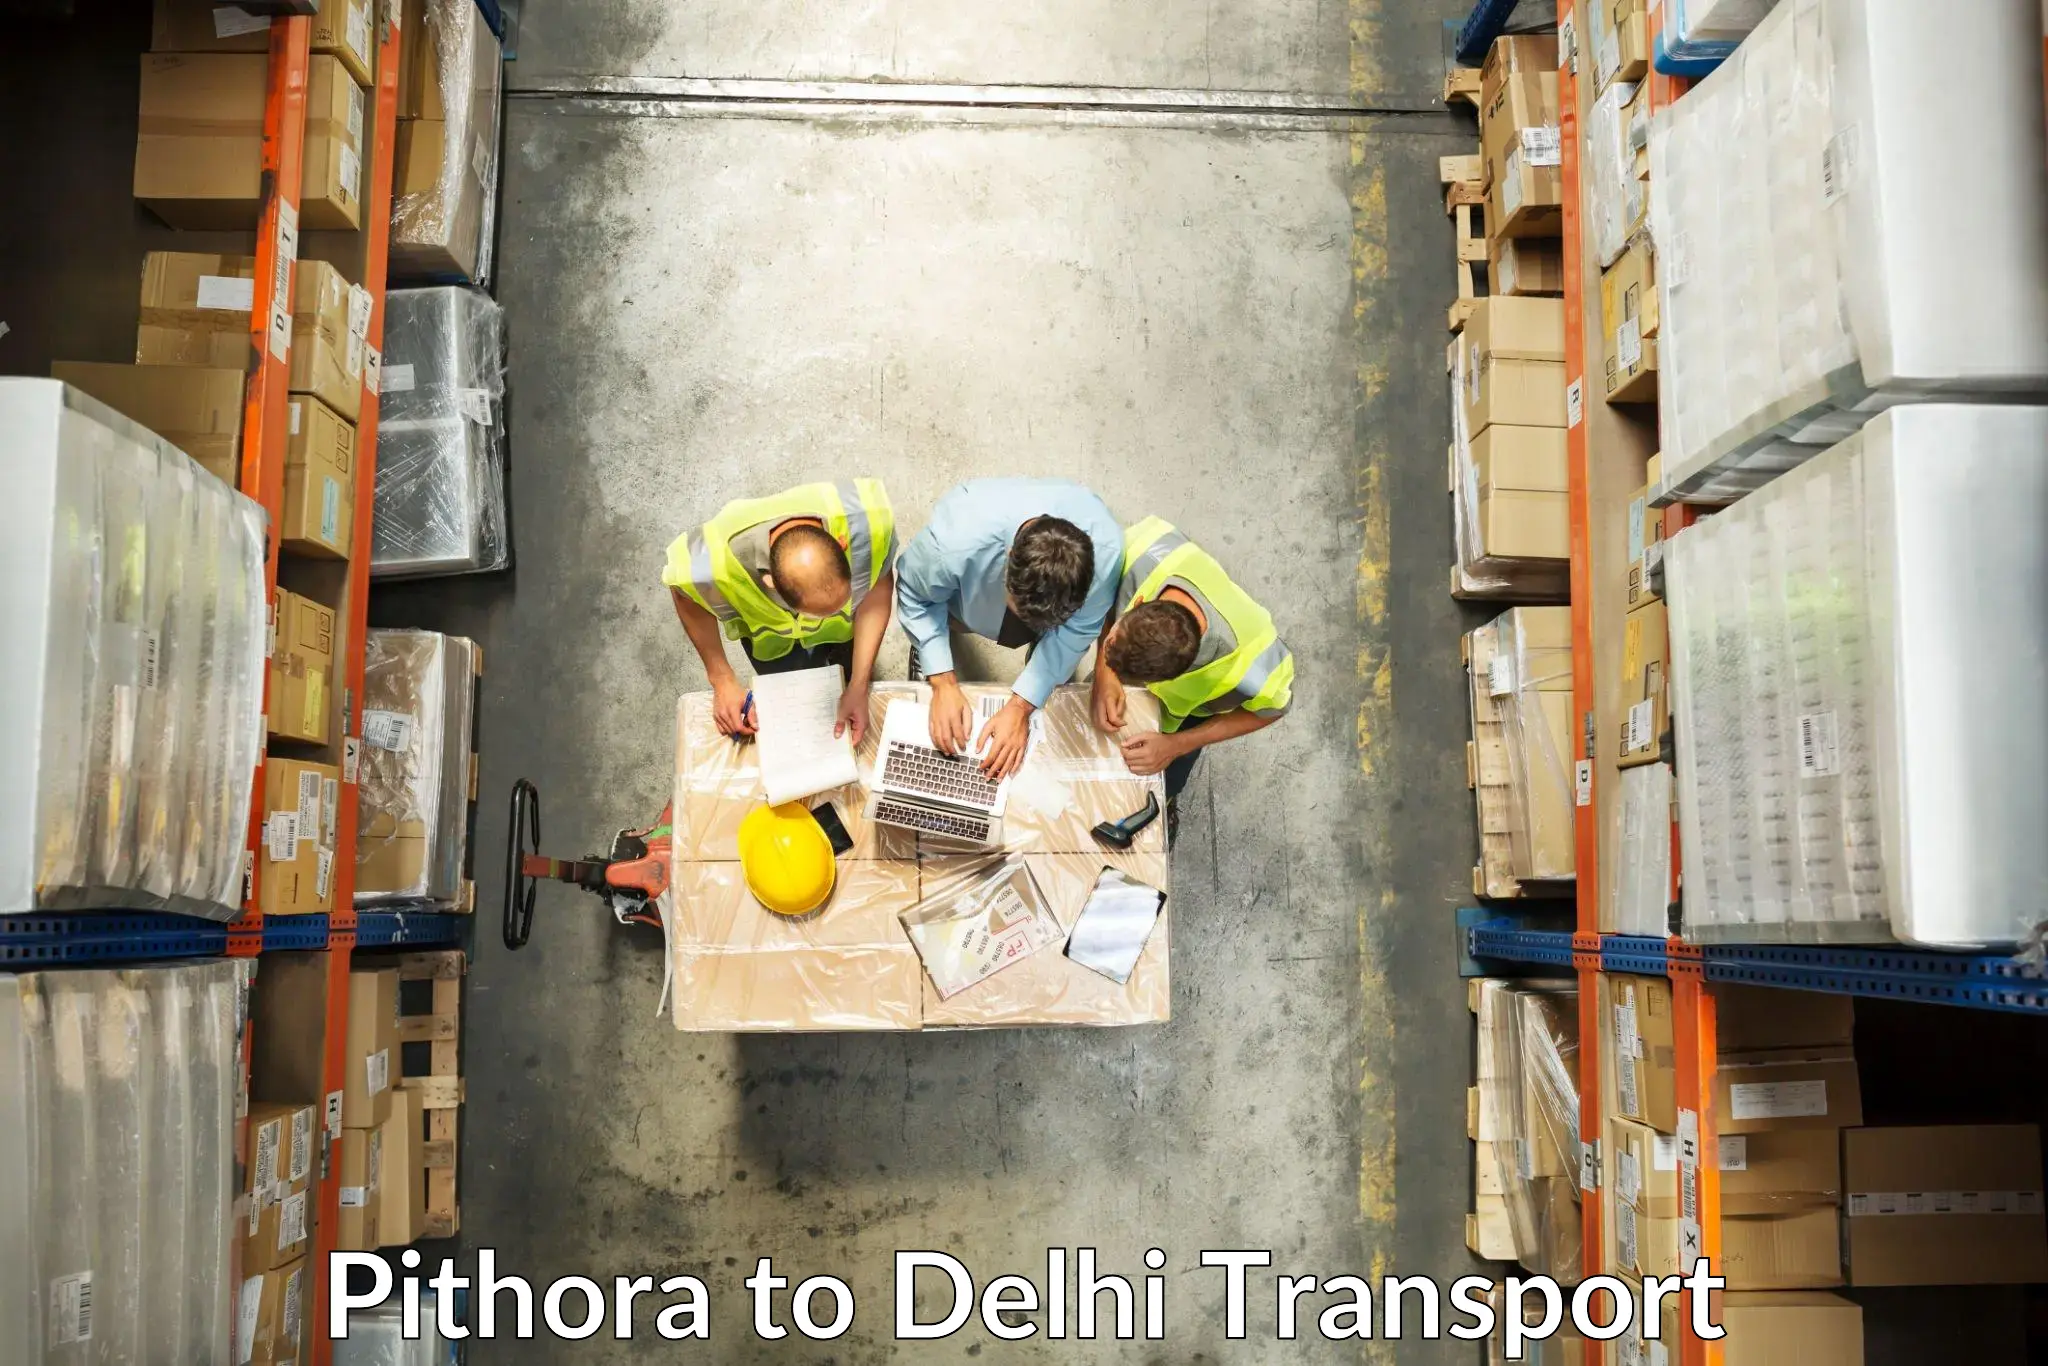 Daily transport service Pithora to Burari